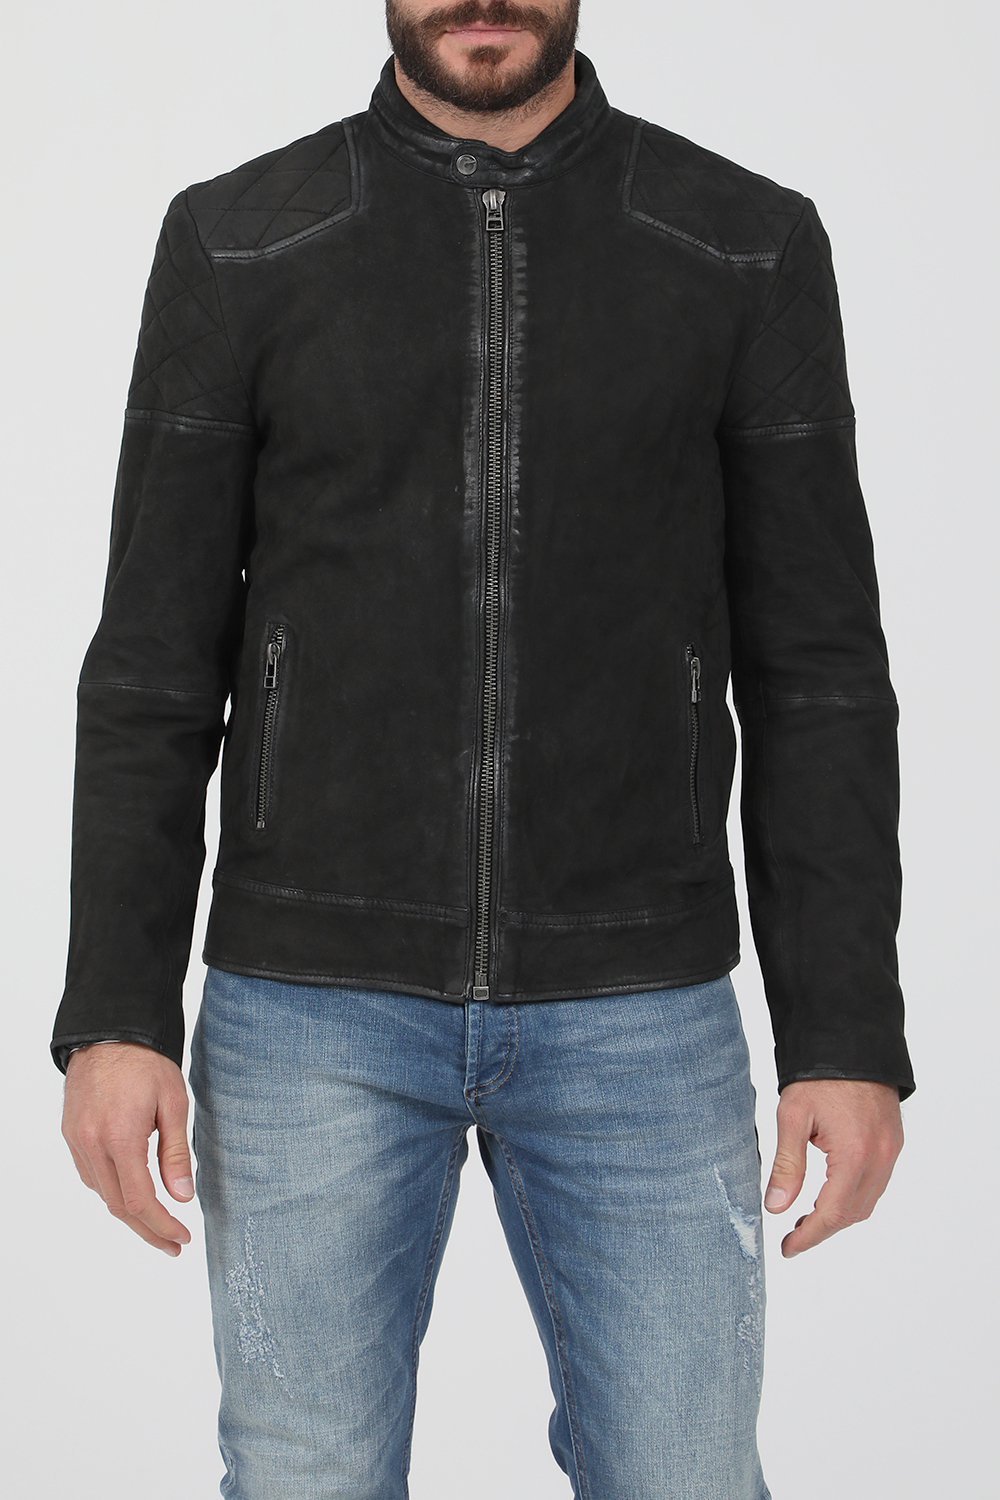 GOOSECRAFT – Ανδρικο δερματινο jacket GOOSECRAFT GC BRENTWOOD BIKER μαυρο